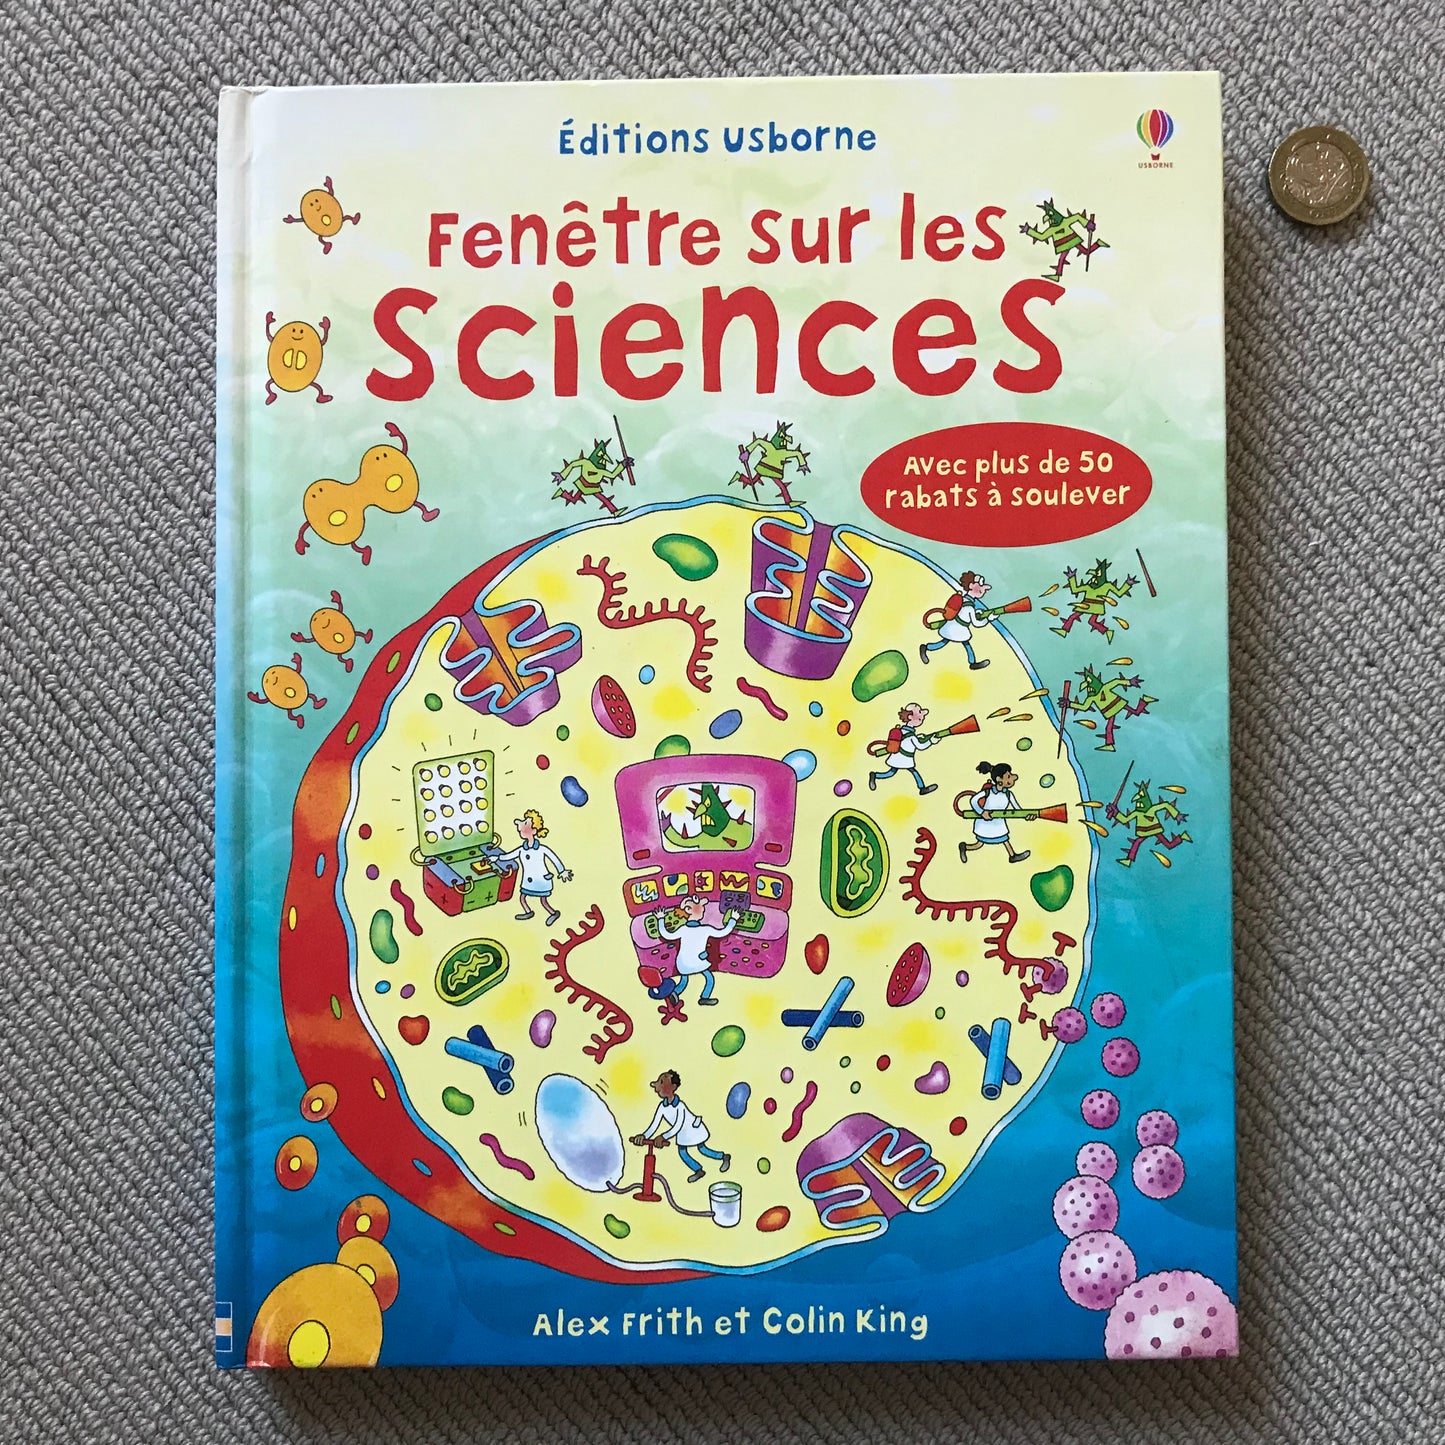 Les sciences (Fenêtre sur) - Pop up book